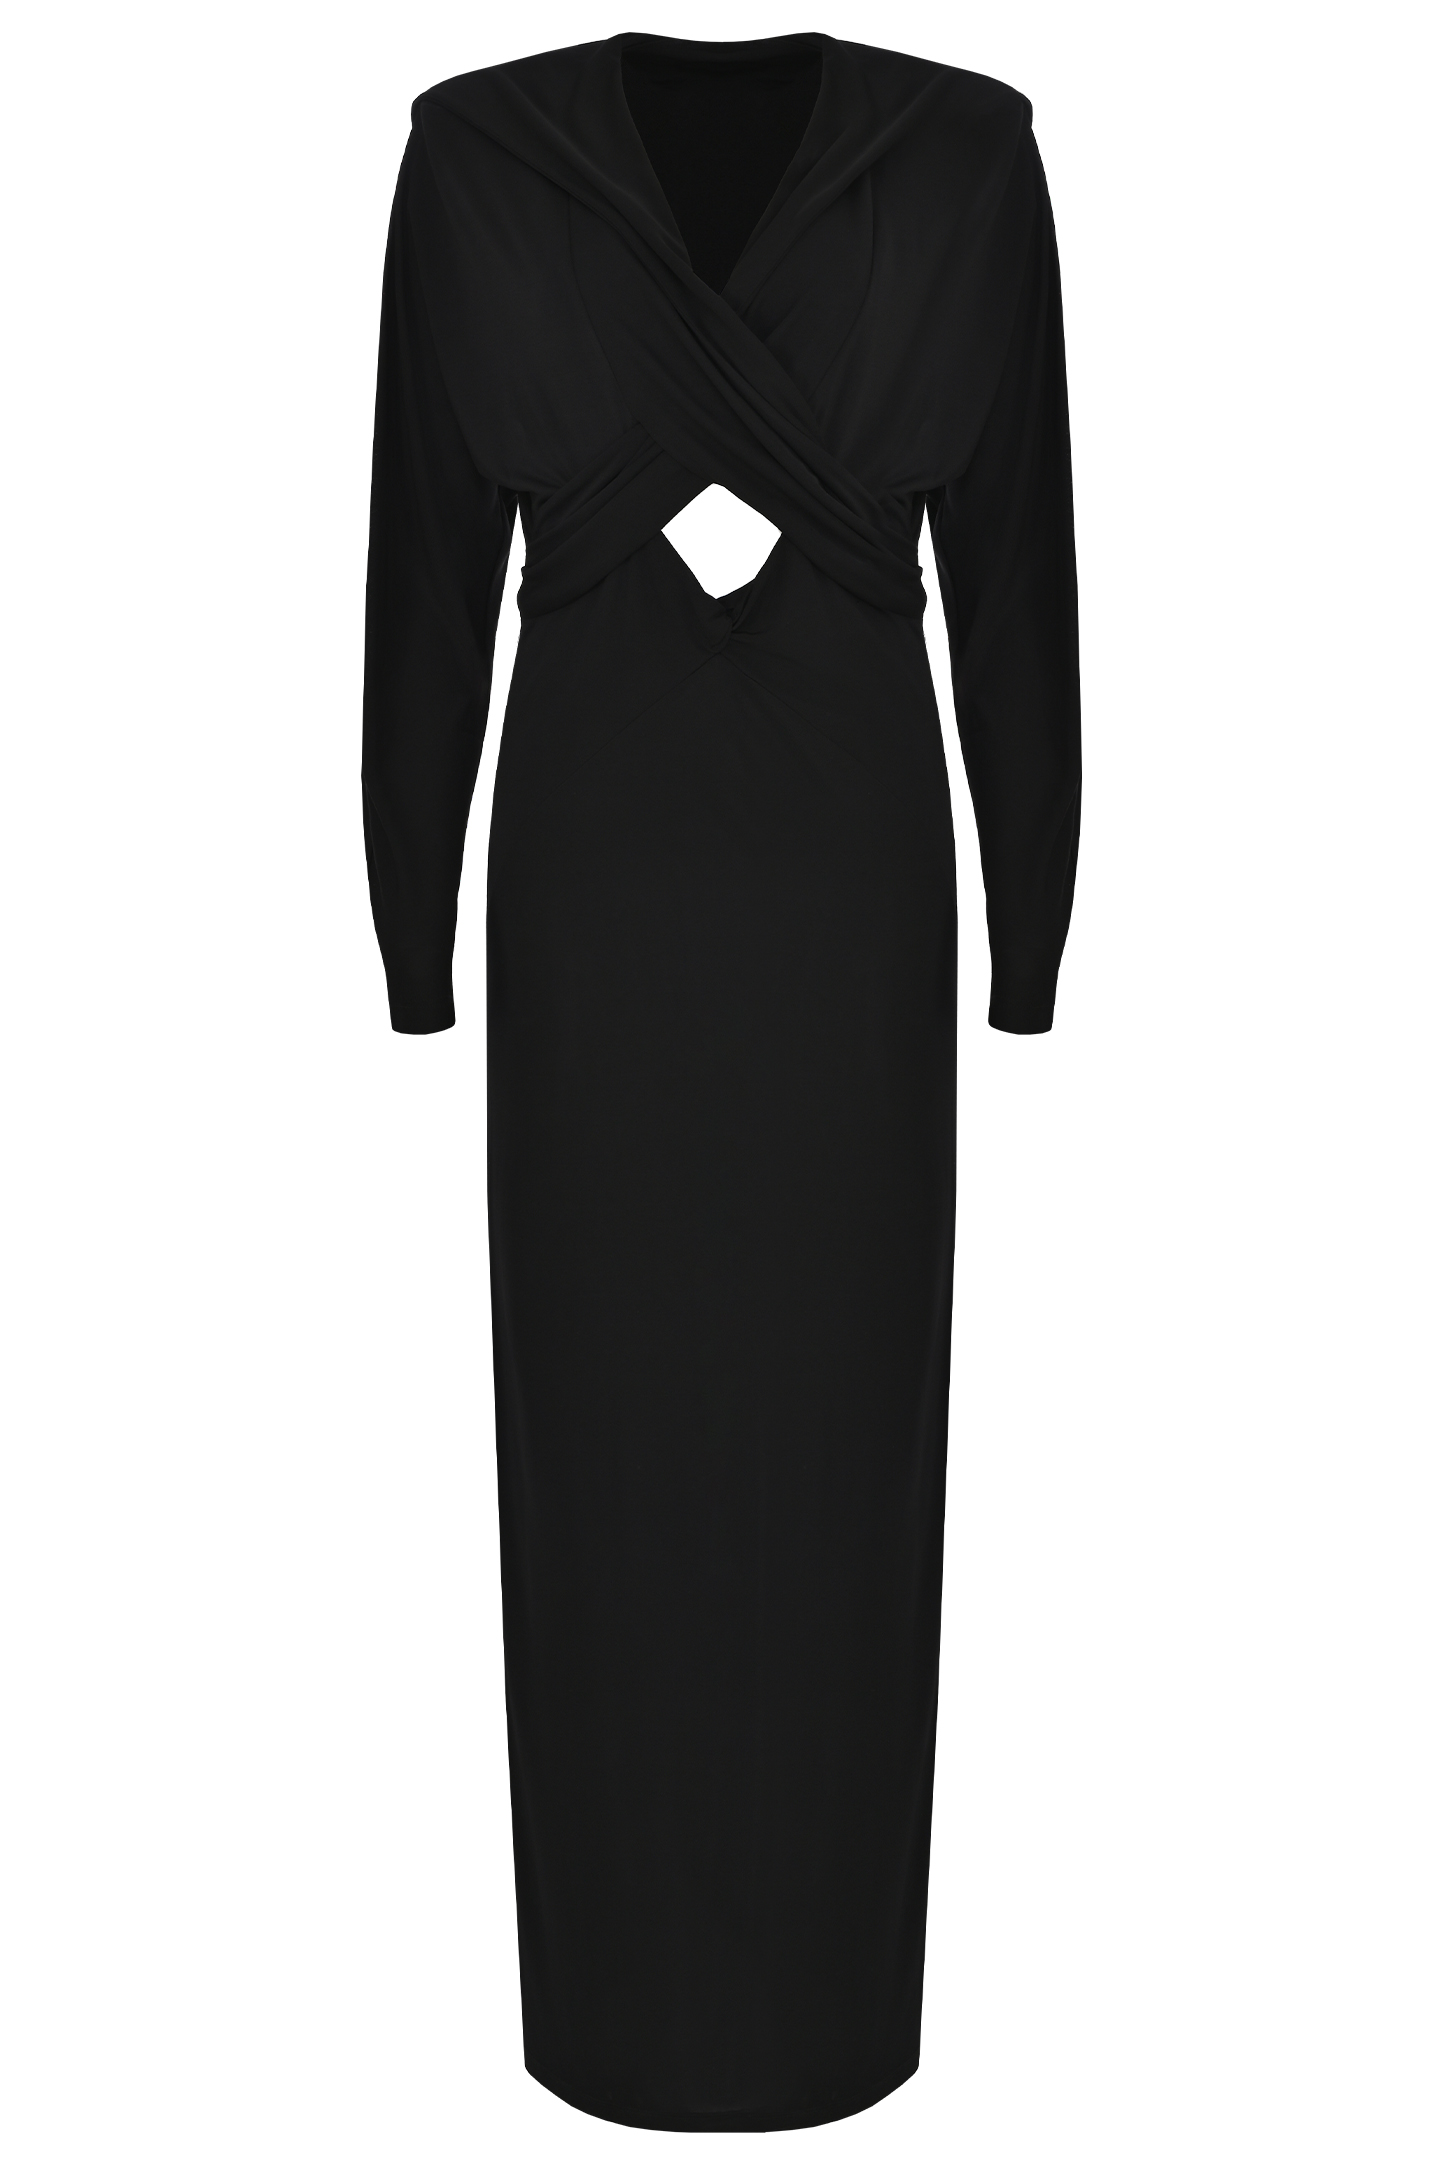 Платье с капюшоном и открытой спиной JACOB LEE WDV001SS24B, цвет: Черный, Женский